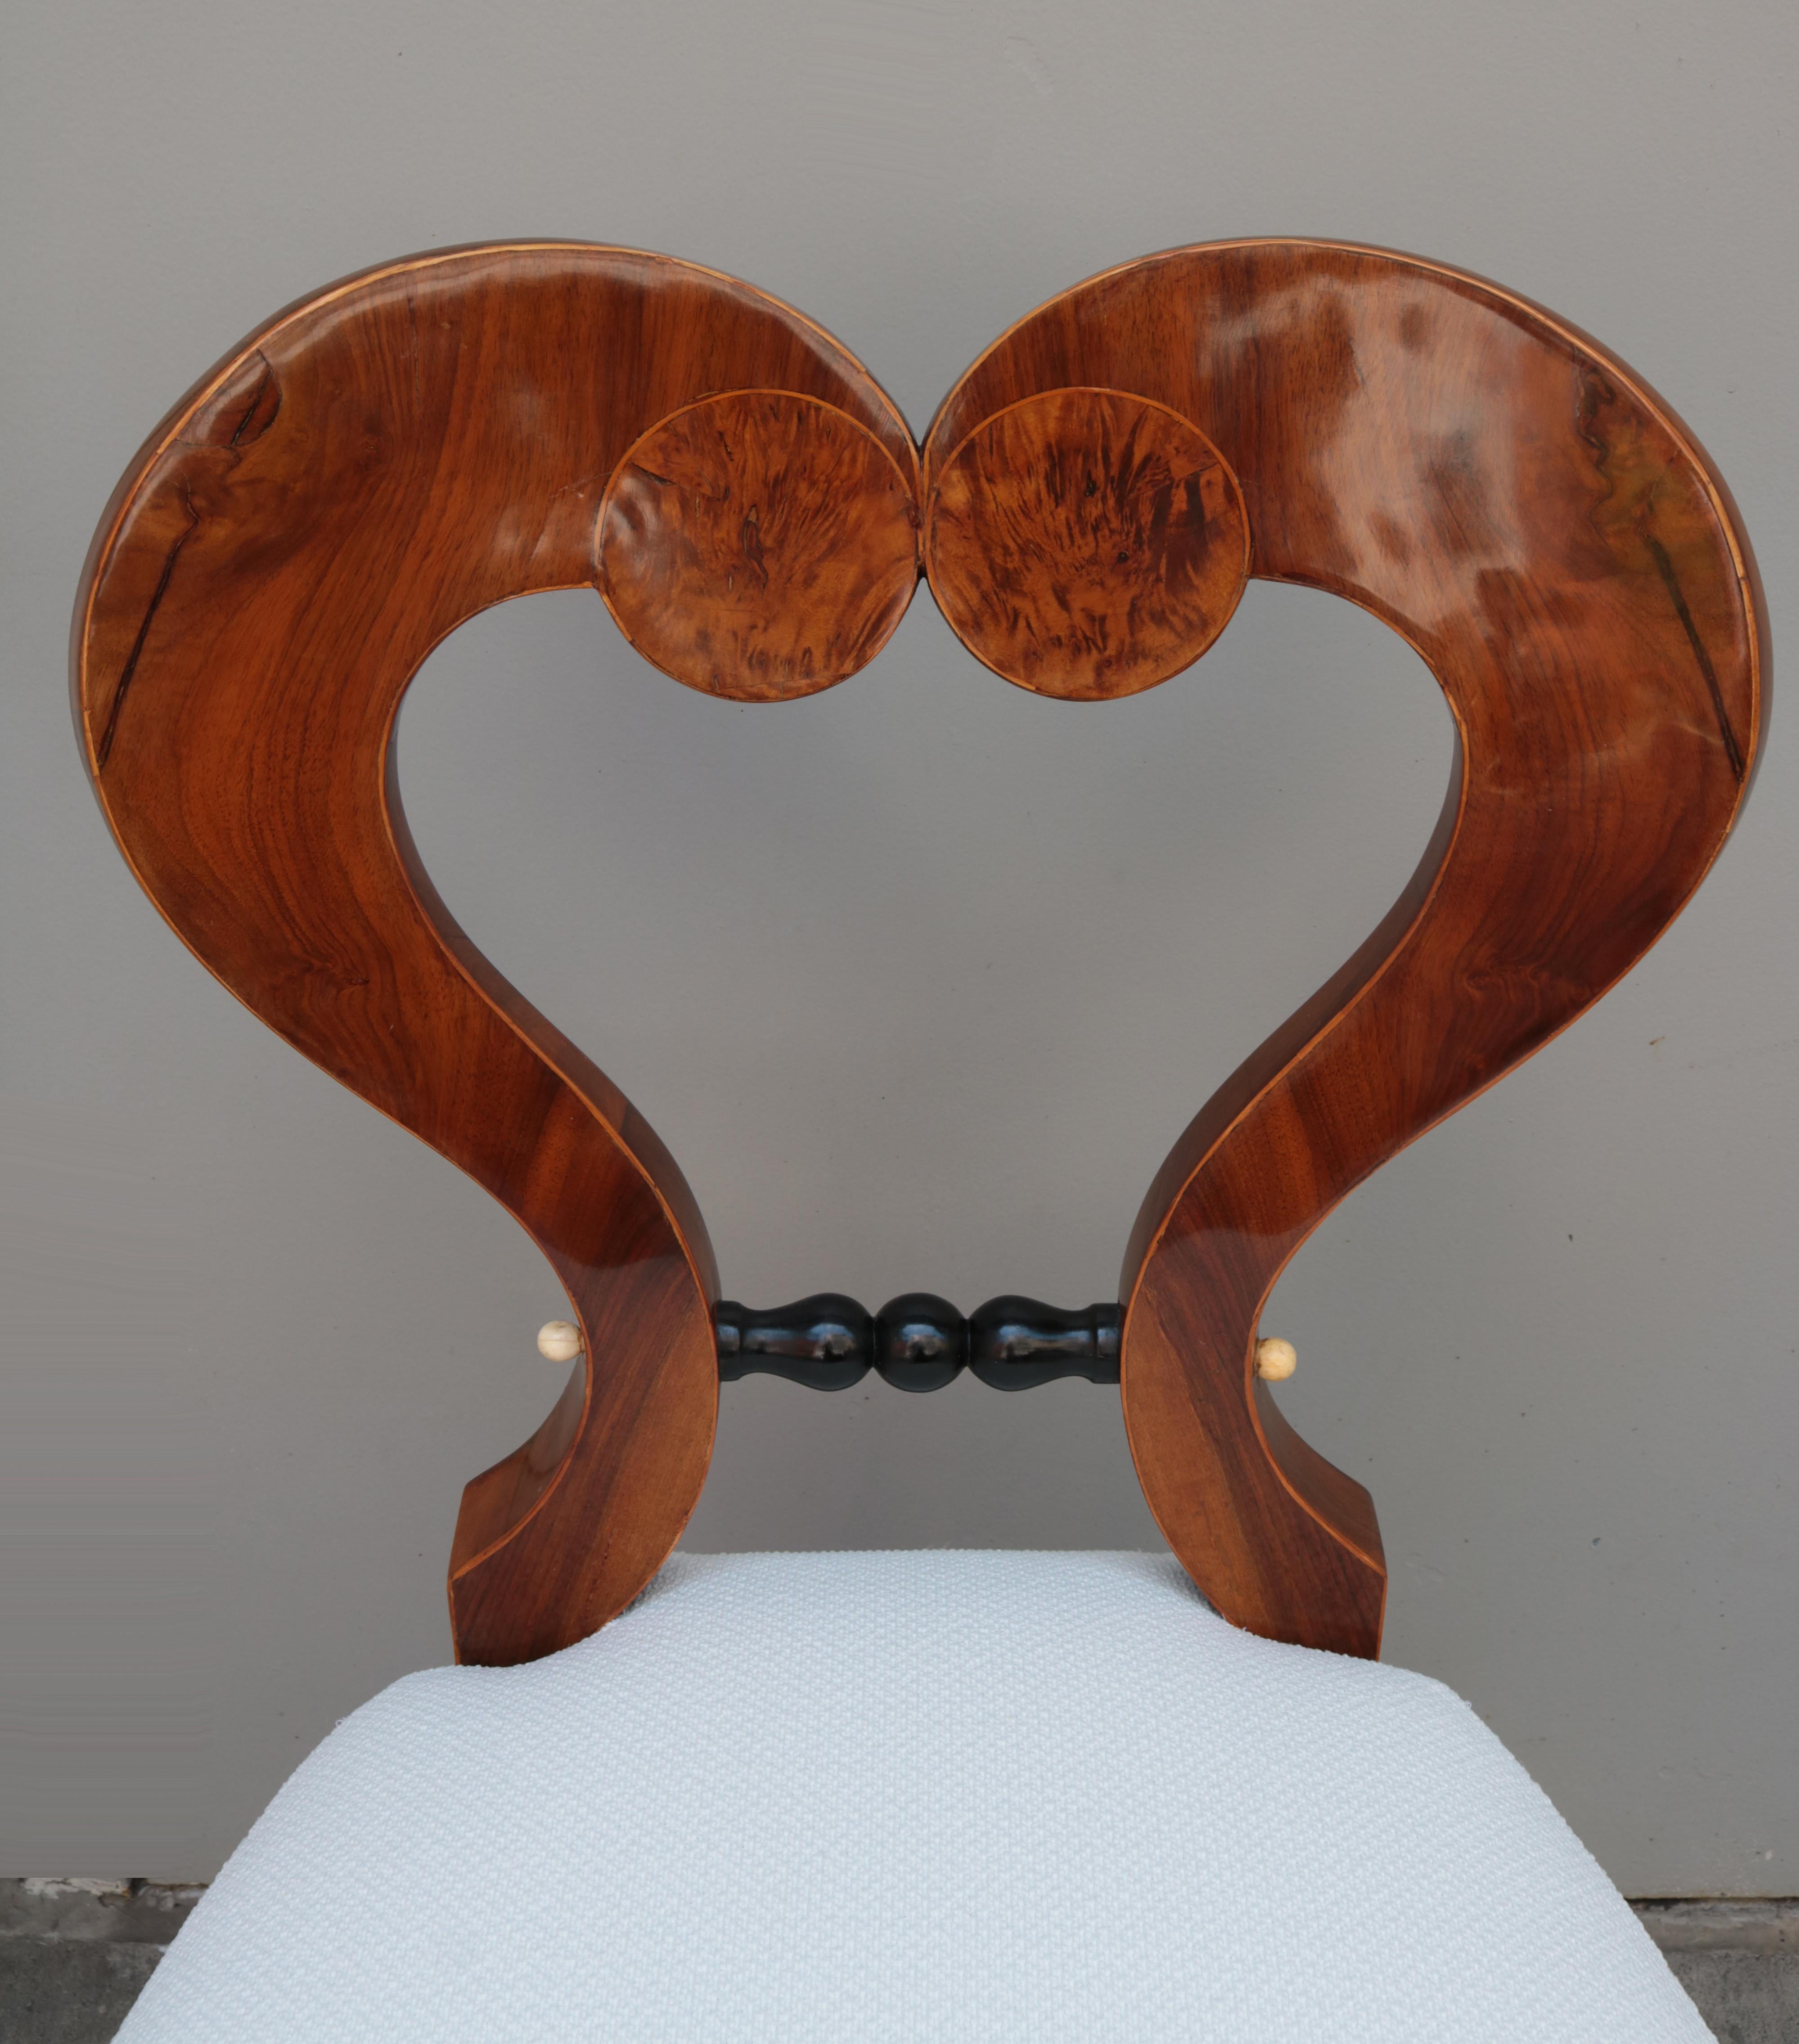 Fine Biedermeier side chair.
Walnut with walnut burl, ebonized accents 
and fruitwood inlays.
 